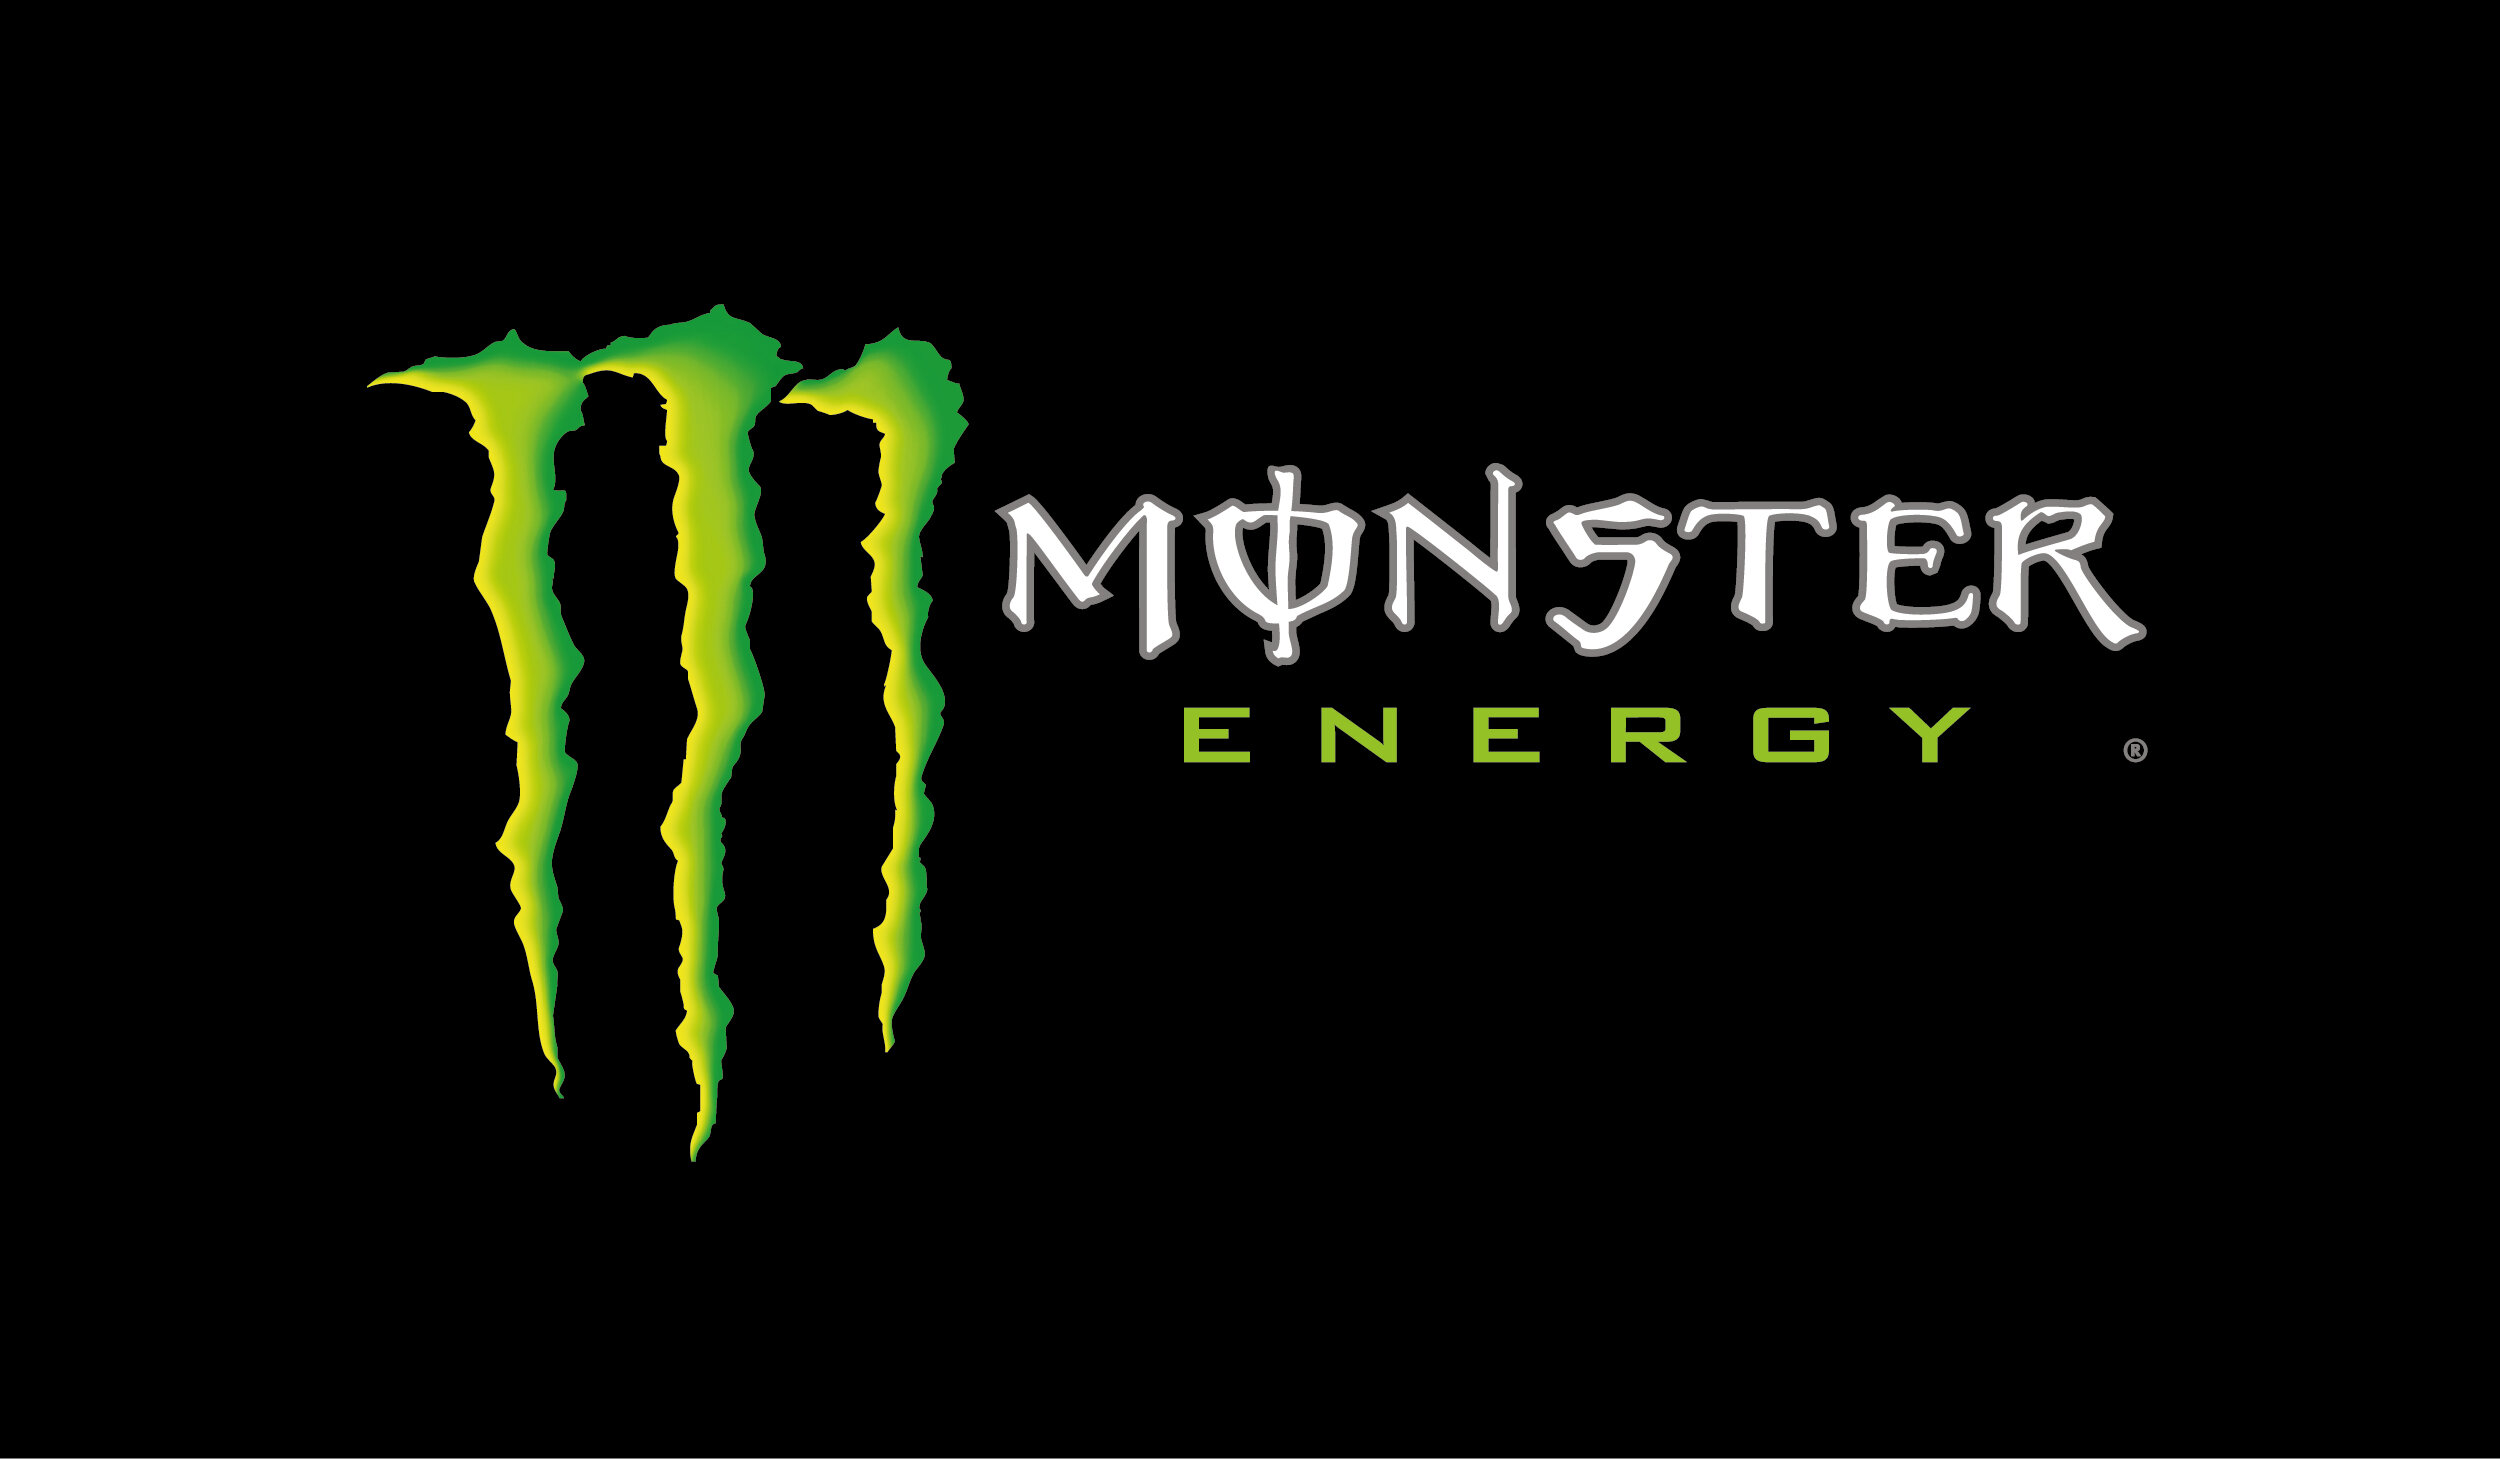 logo monster site 350x650.jpg